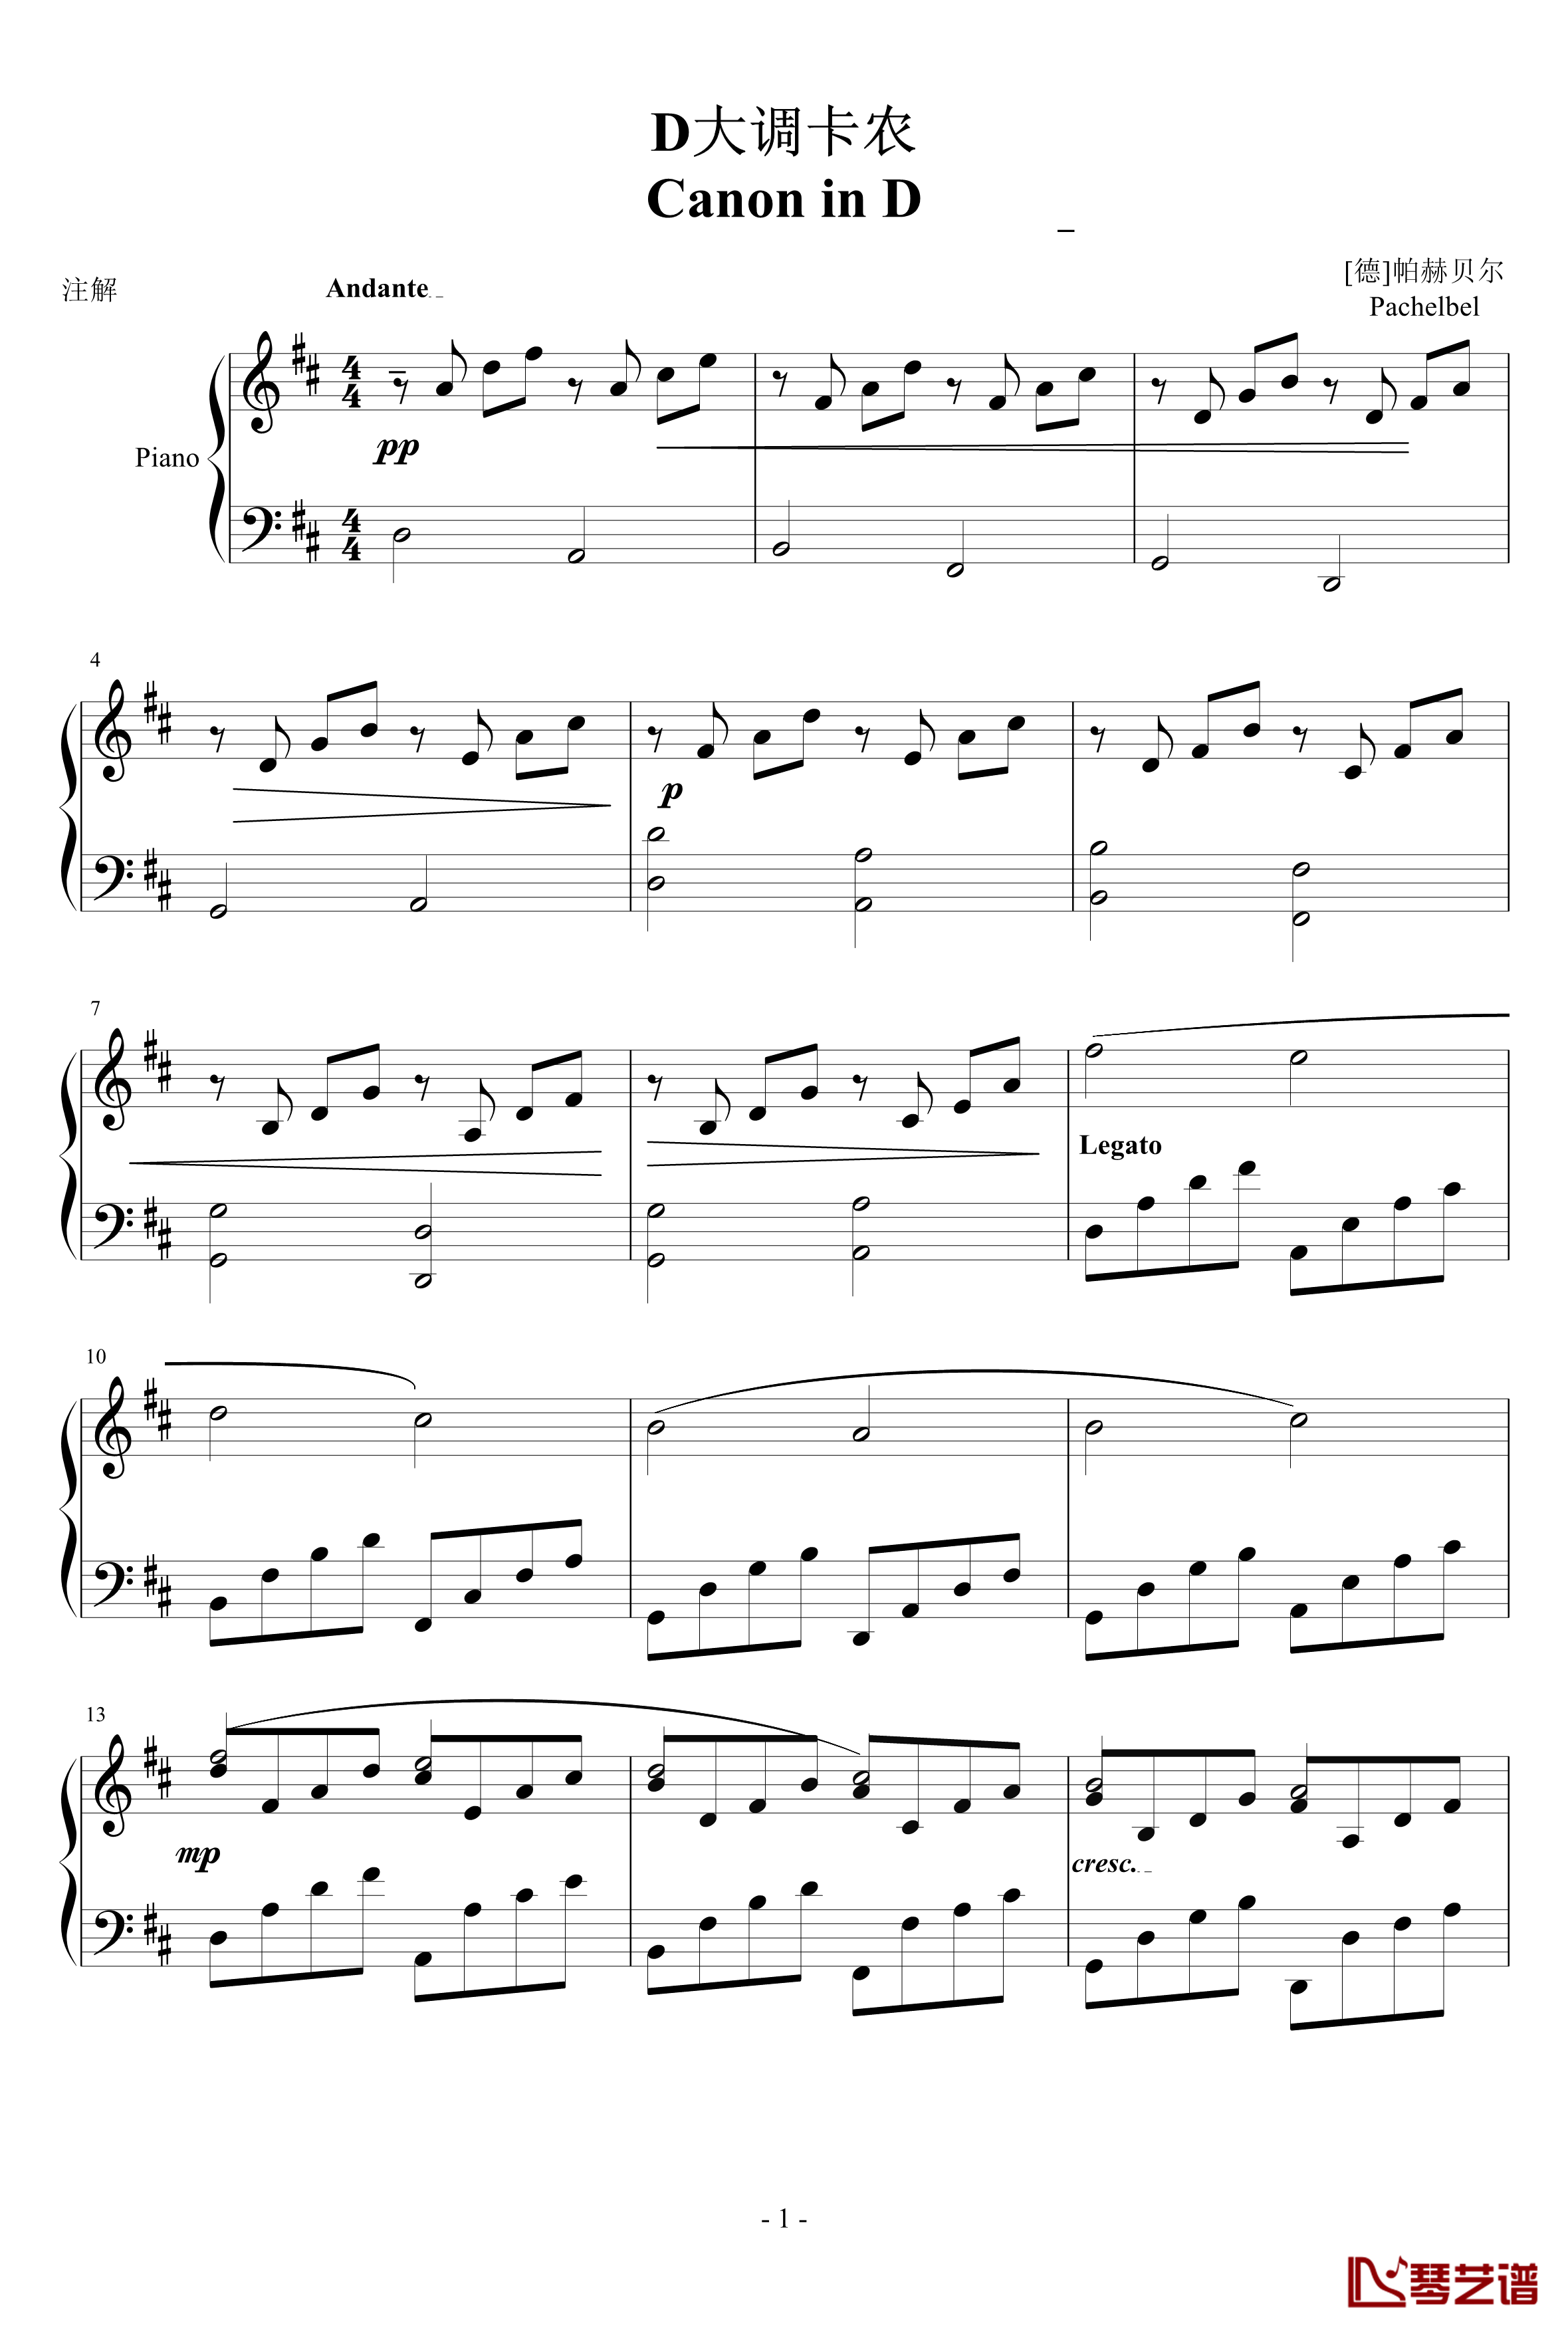 卡农正版钢琴谱-帕赫贝尔-Pachelbel1